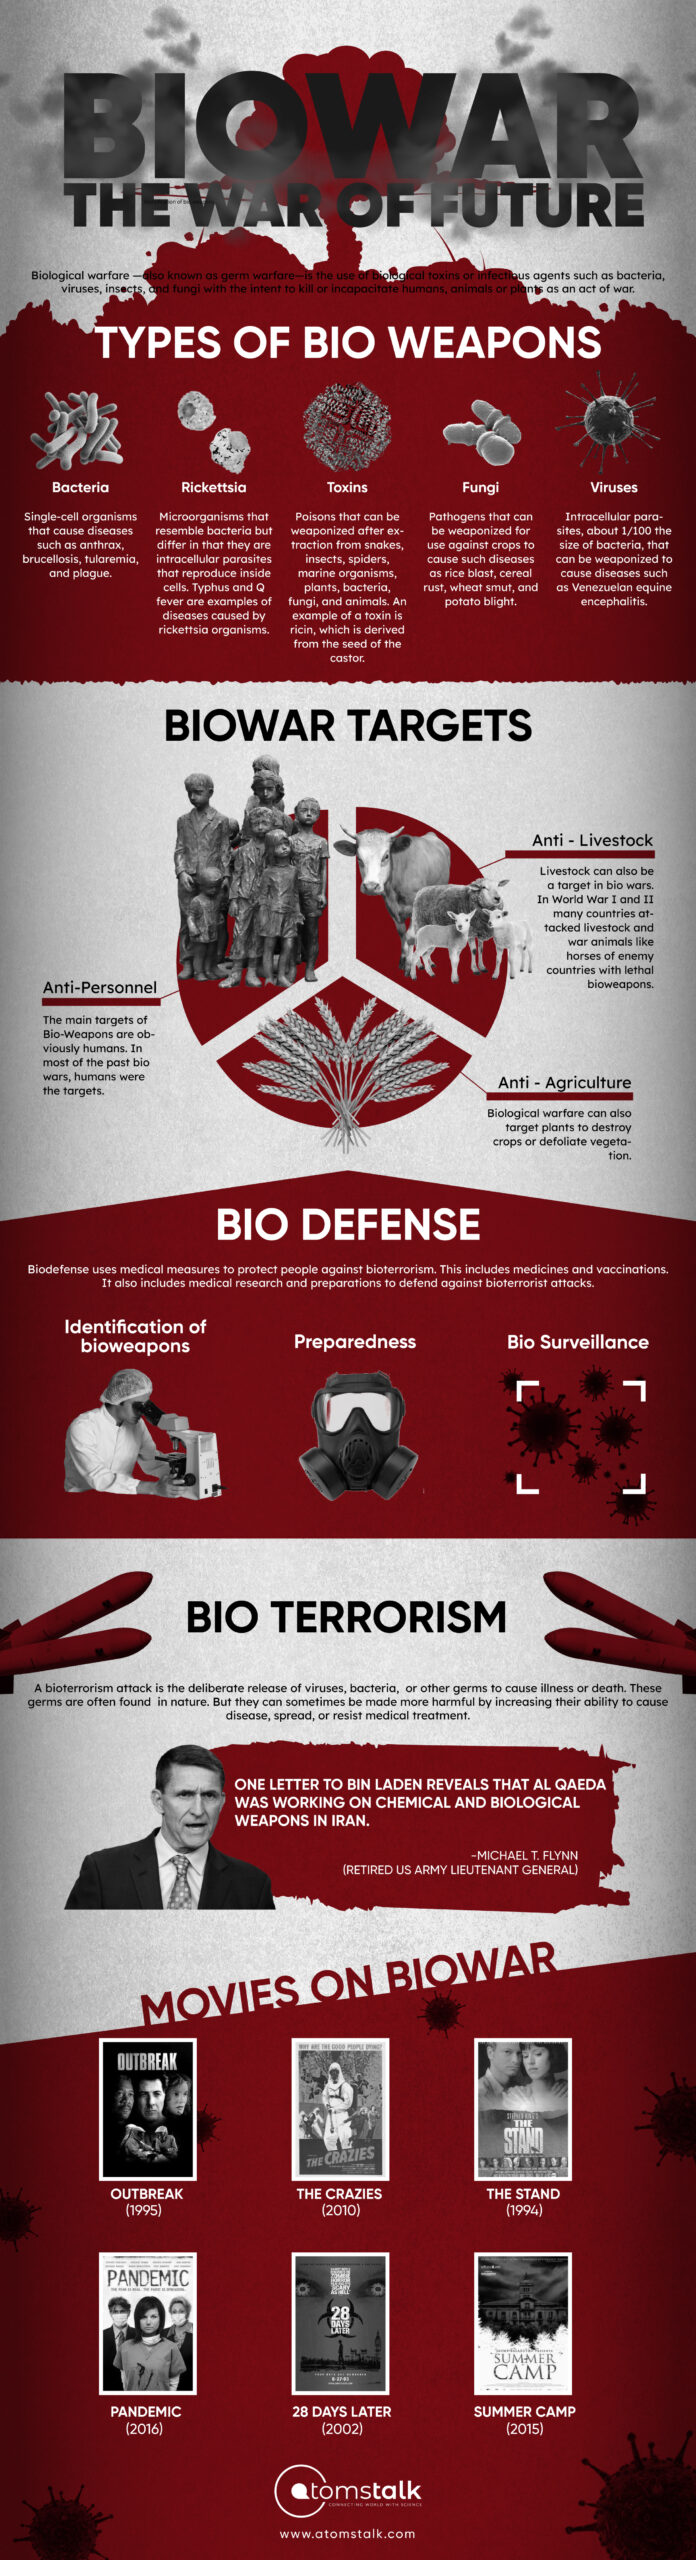 Biowar Infographic